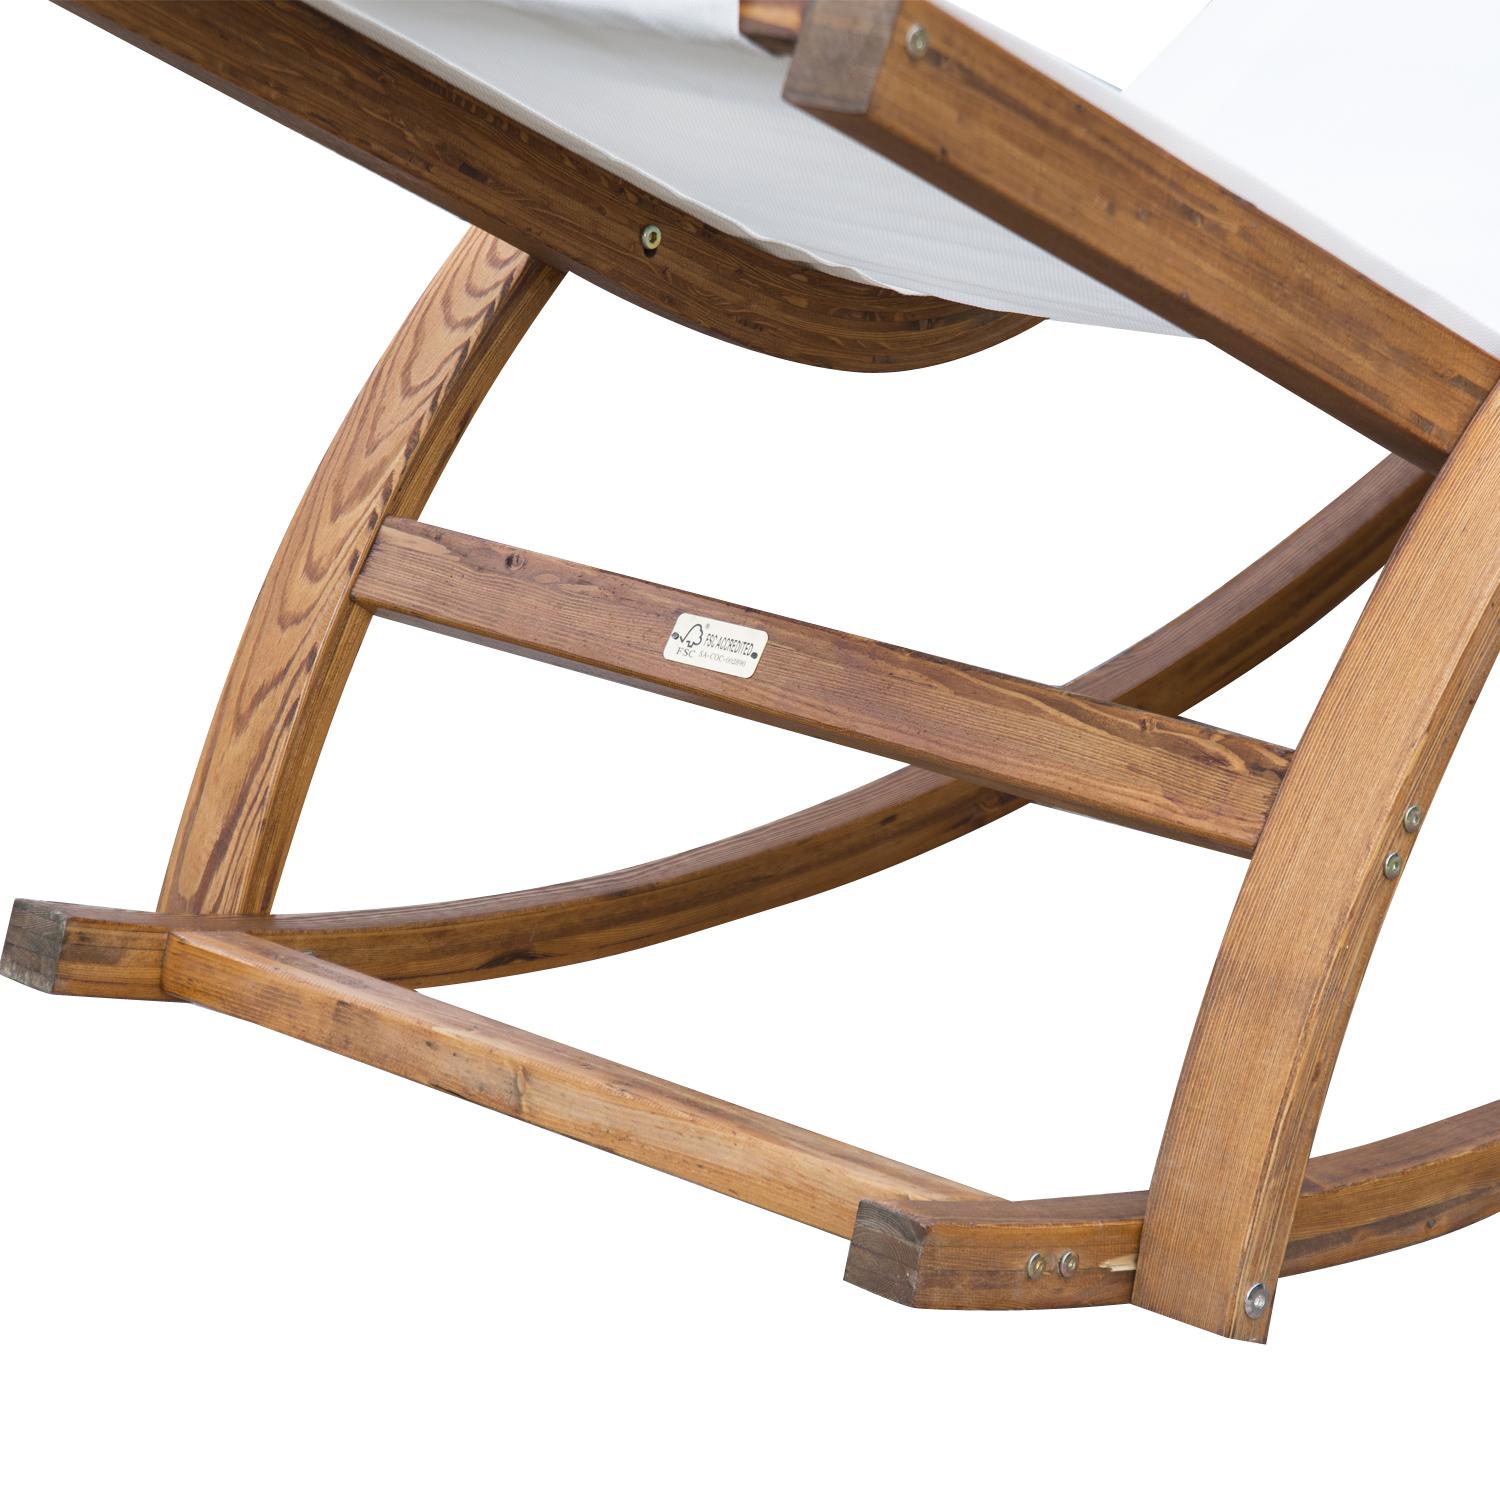 Chaise longue fauteuil berçant à bascule transat bain de soleil rocking chair en bois charge 120 Kg blanc